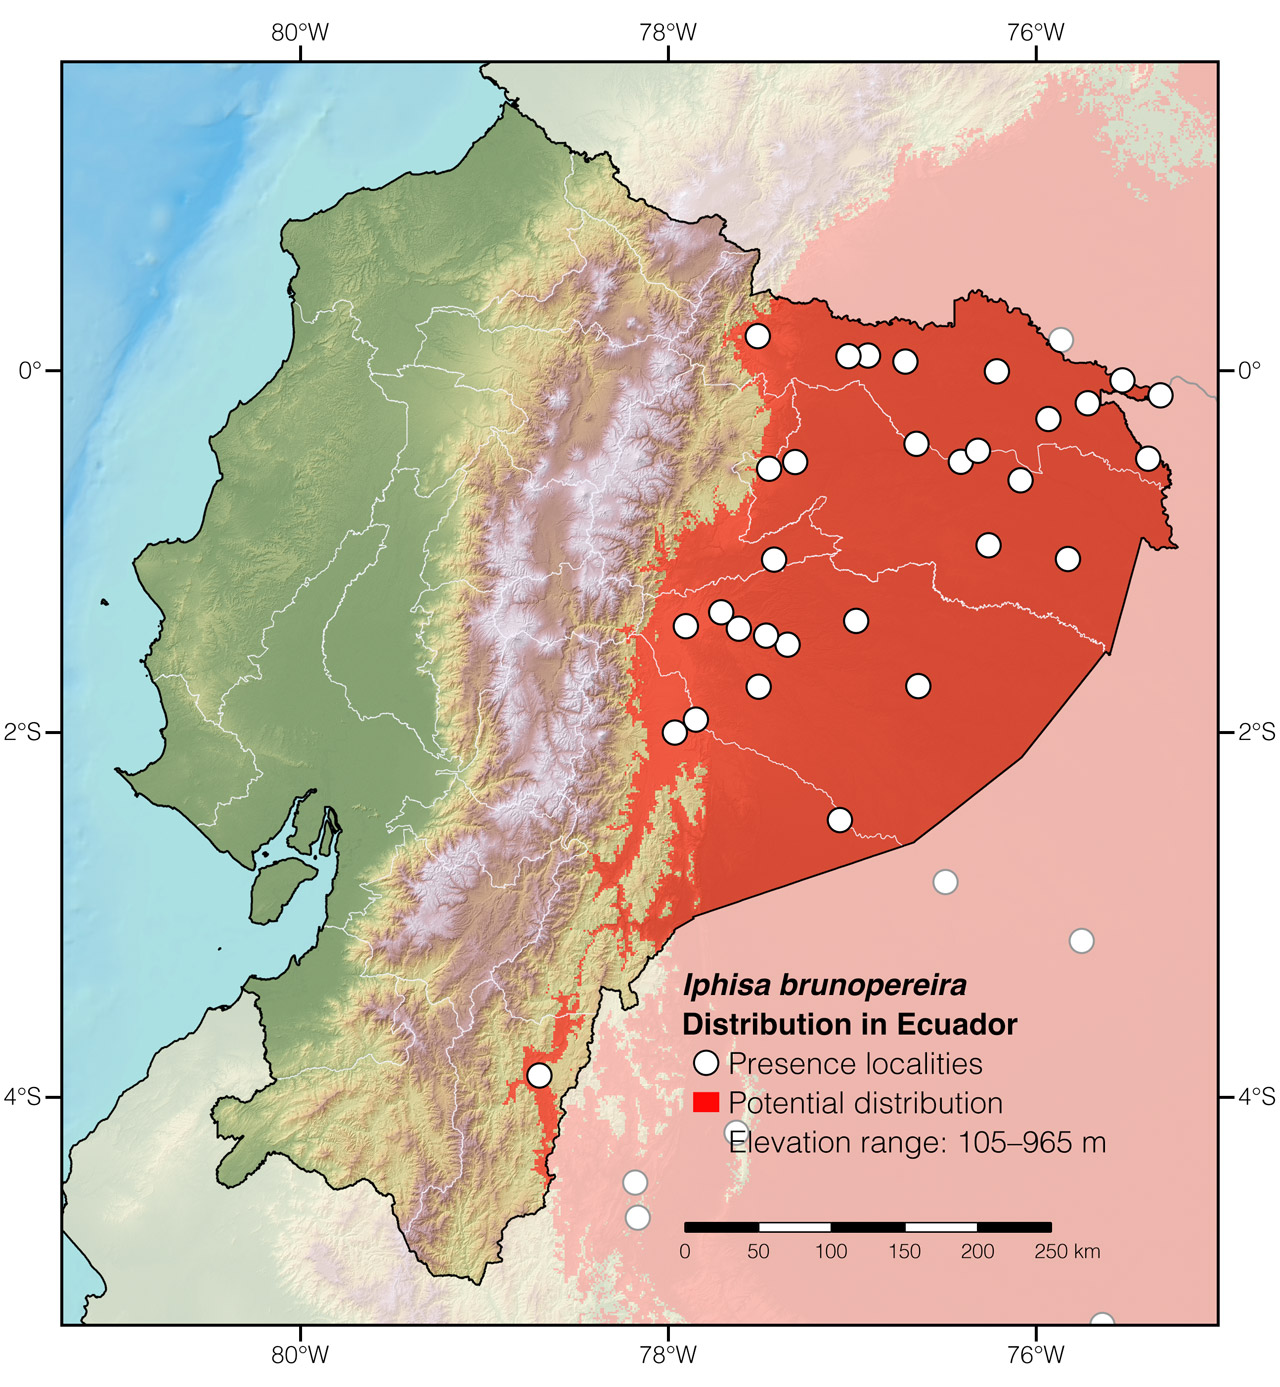 Distribution of Iphisa brunopereira in Ecuador